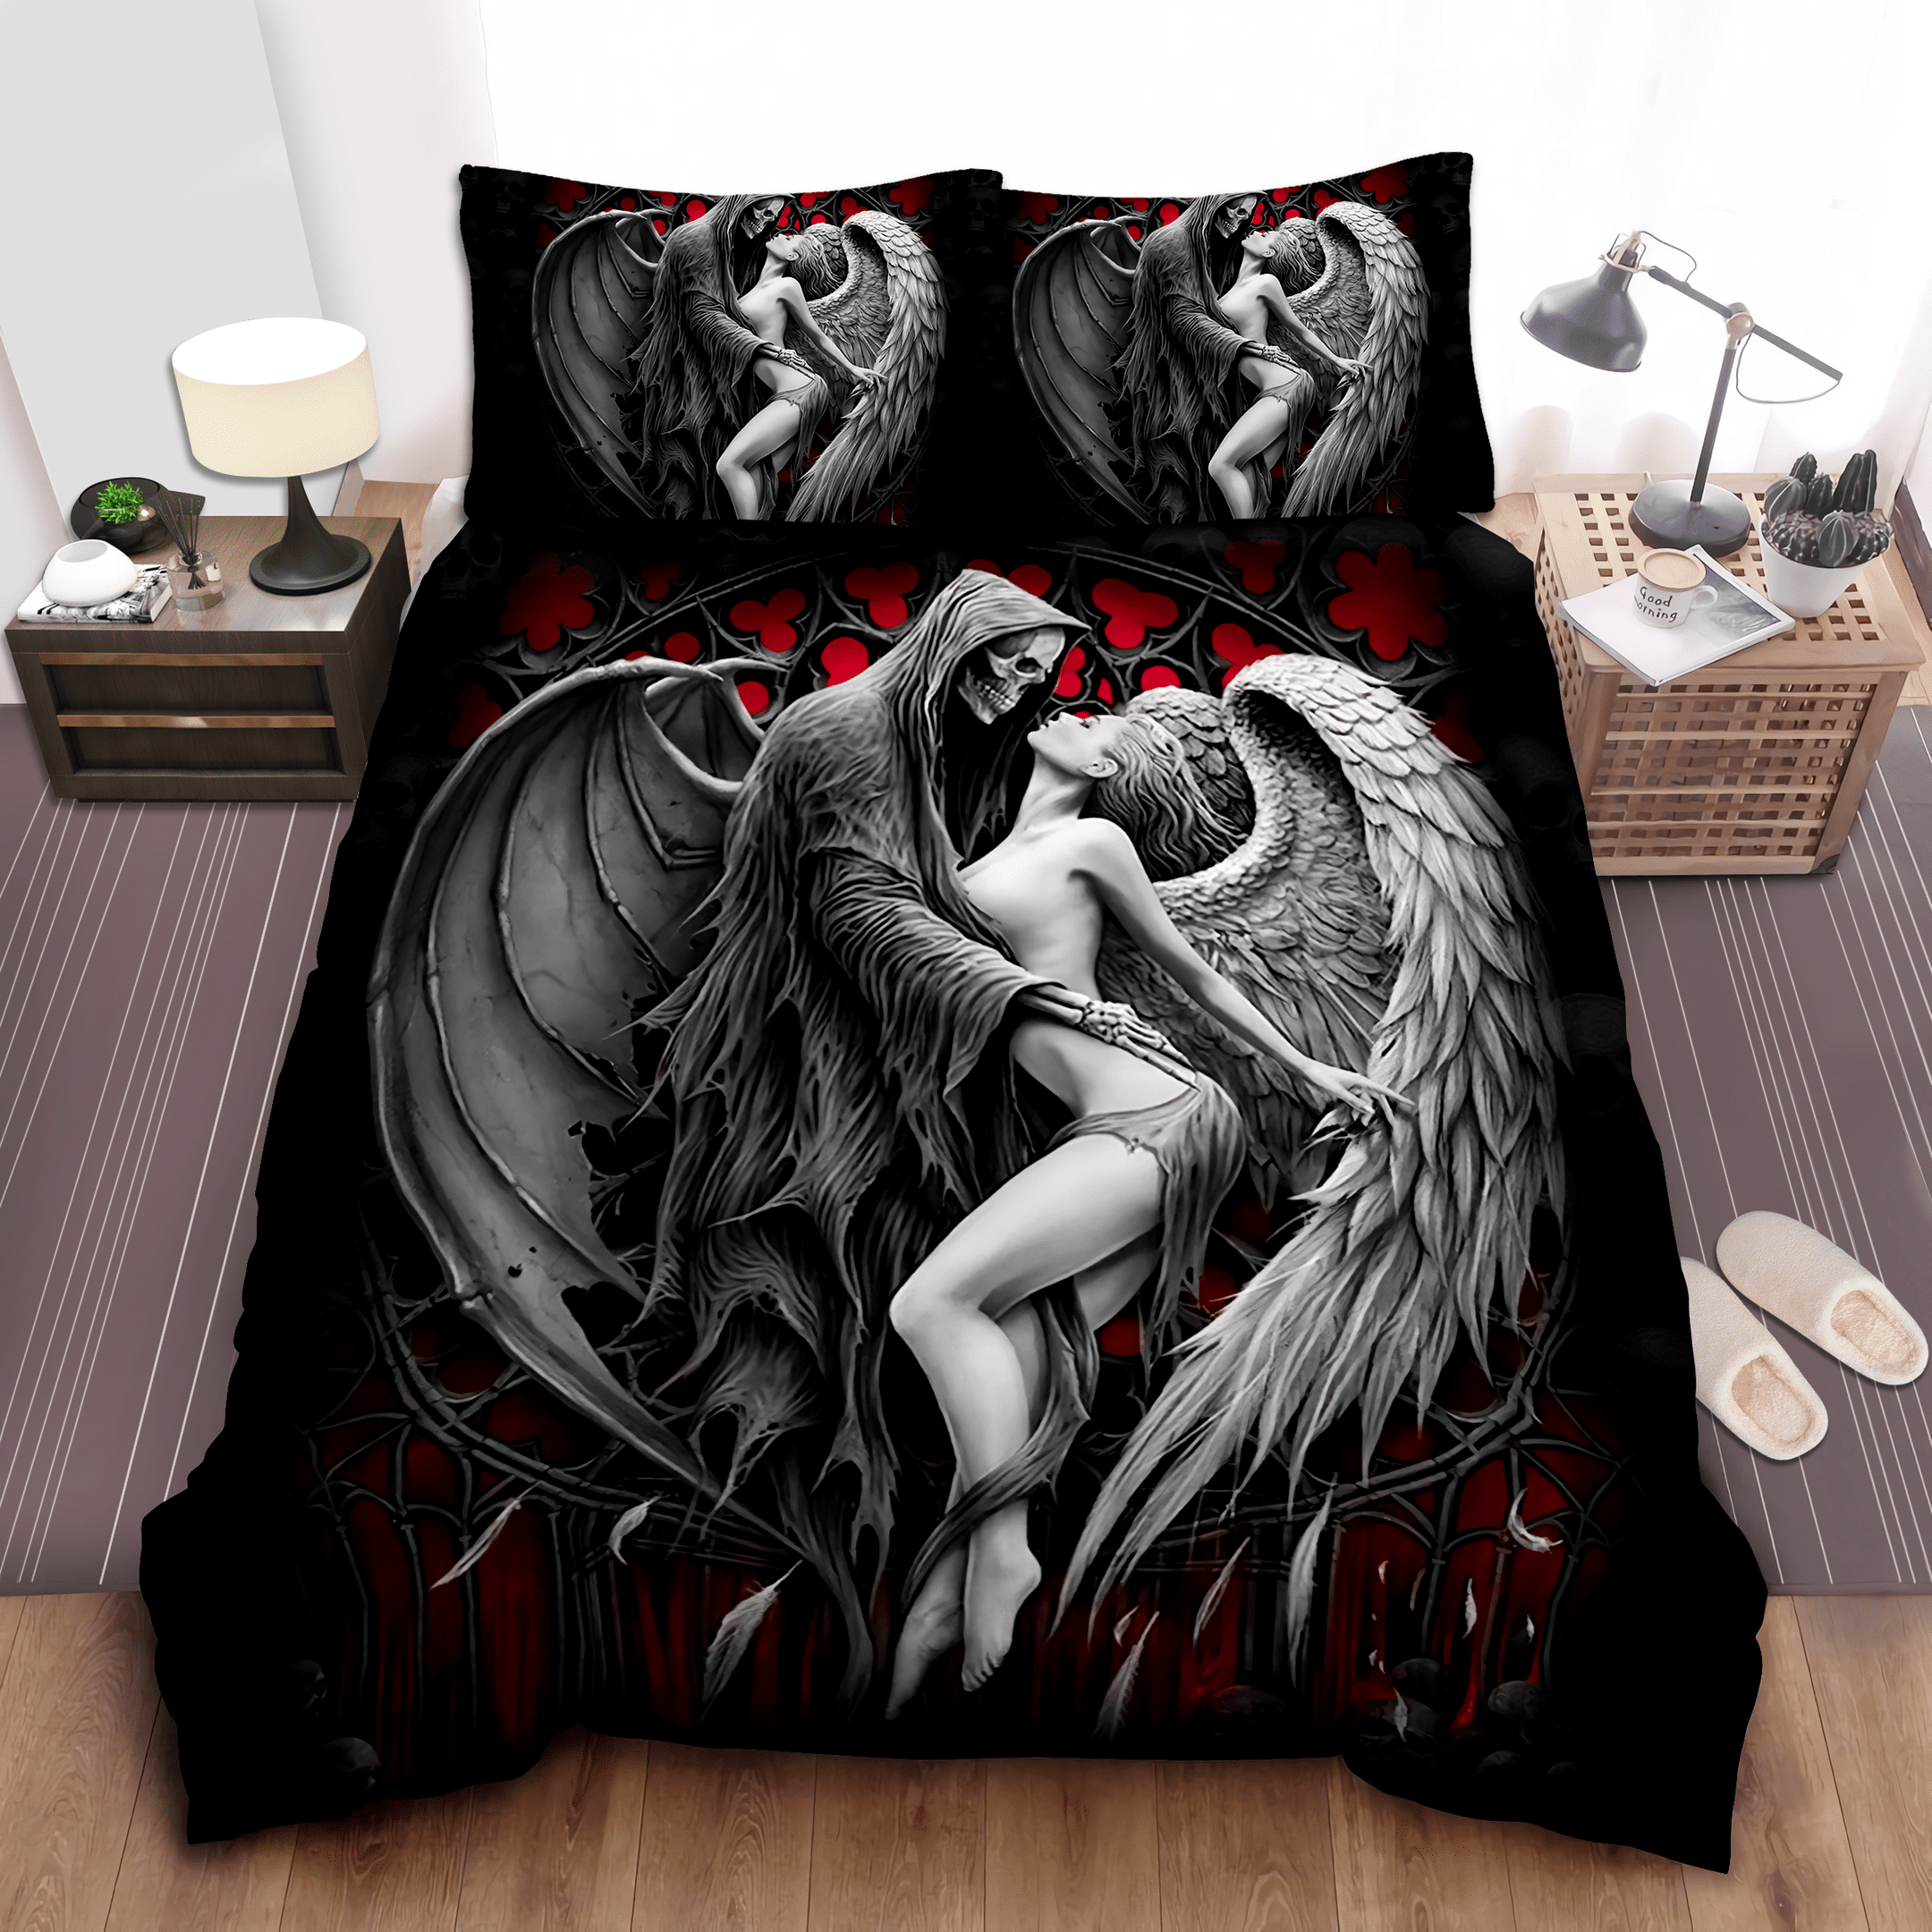 Angels And Demons Bed Sheets Bedspread Duvet Cover Bedding Set